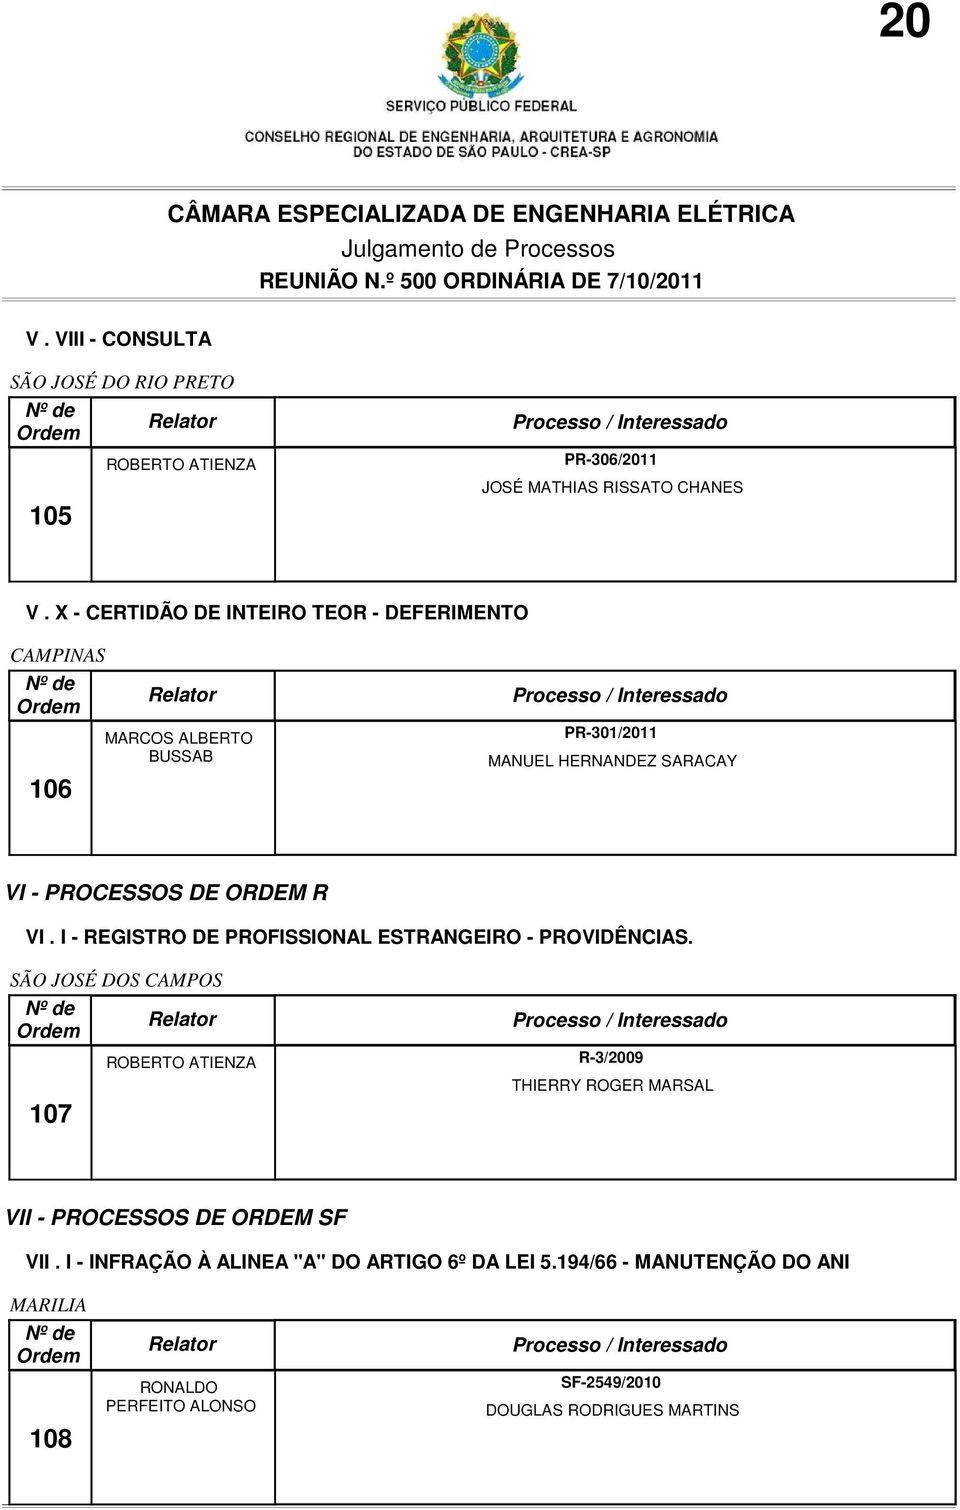 ORDEM R VI. I - REGISTRO DE PROFISSIONAL ESTRANGEIRO - PROVIDÊNCIAS.